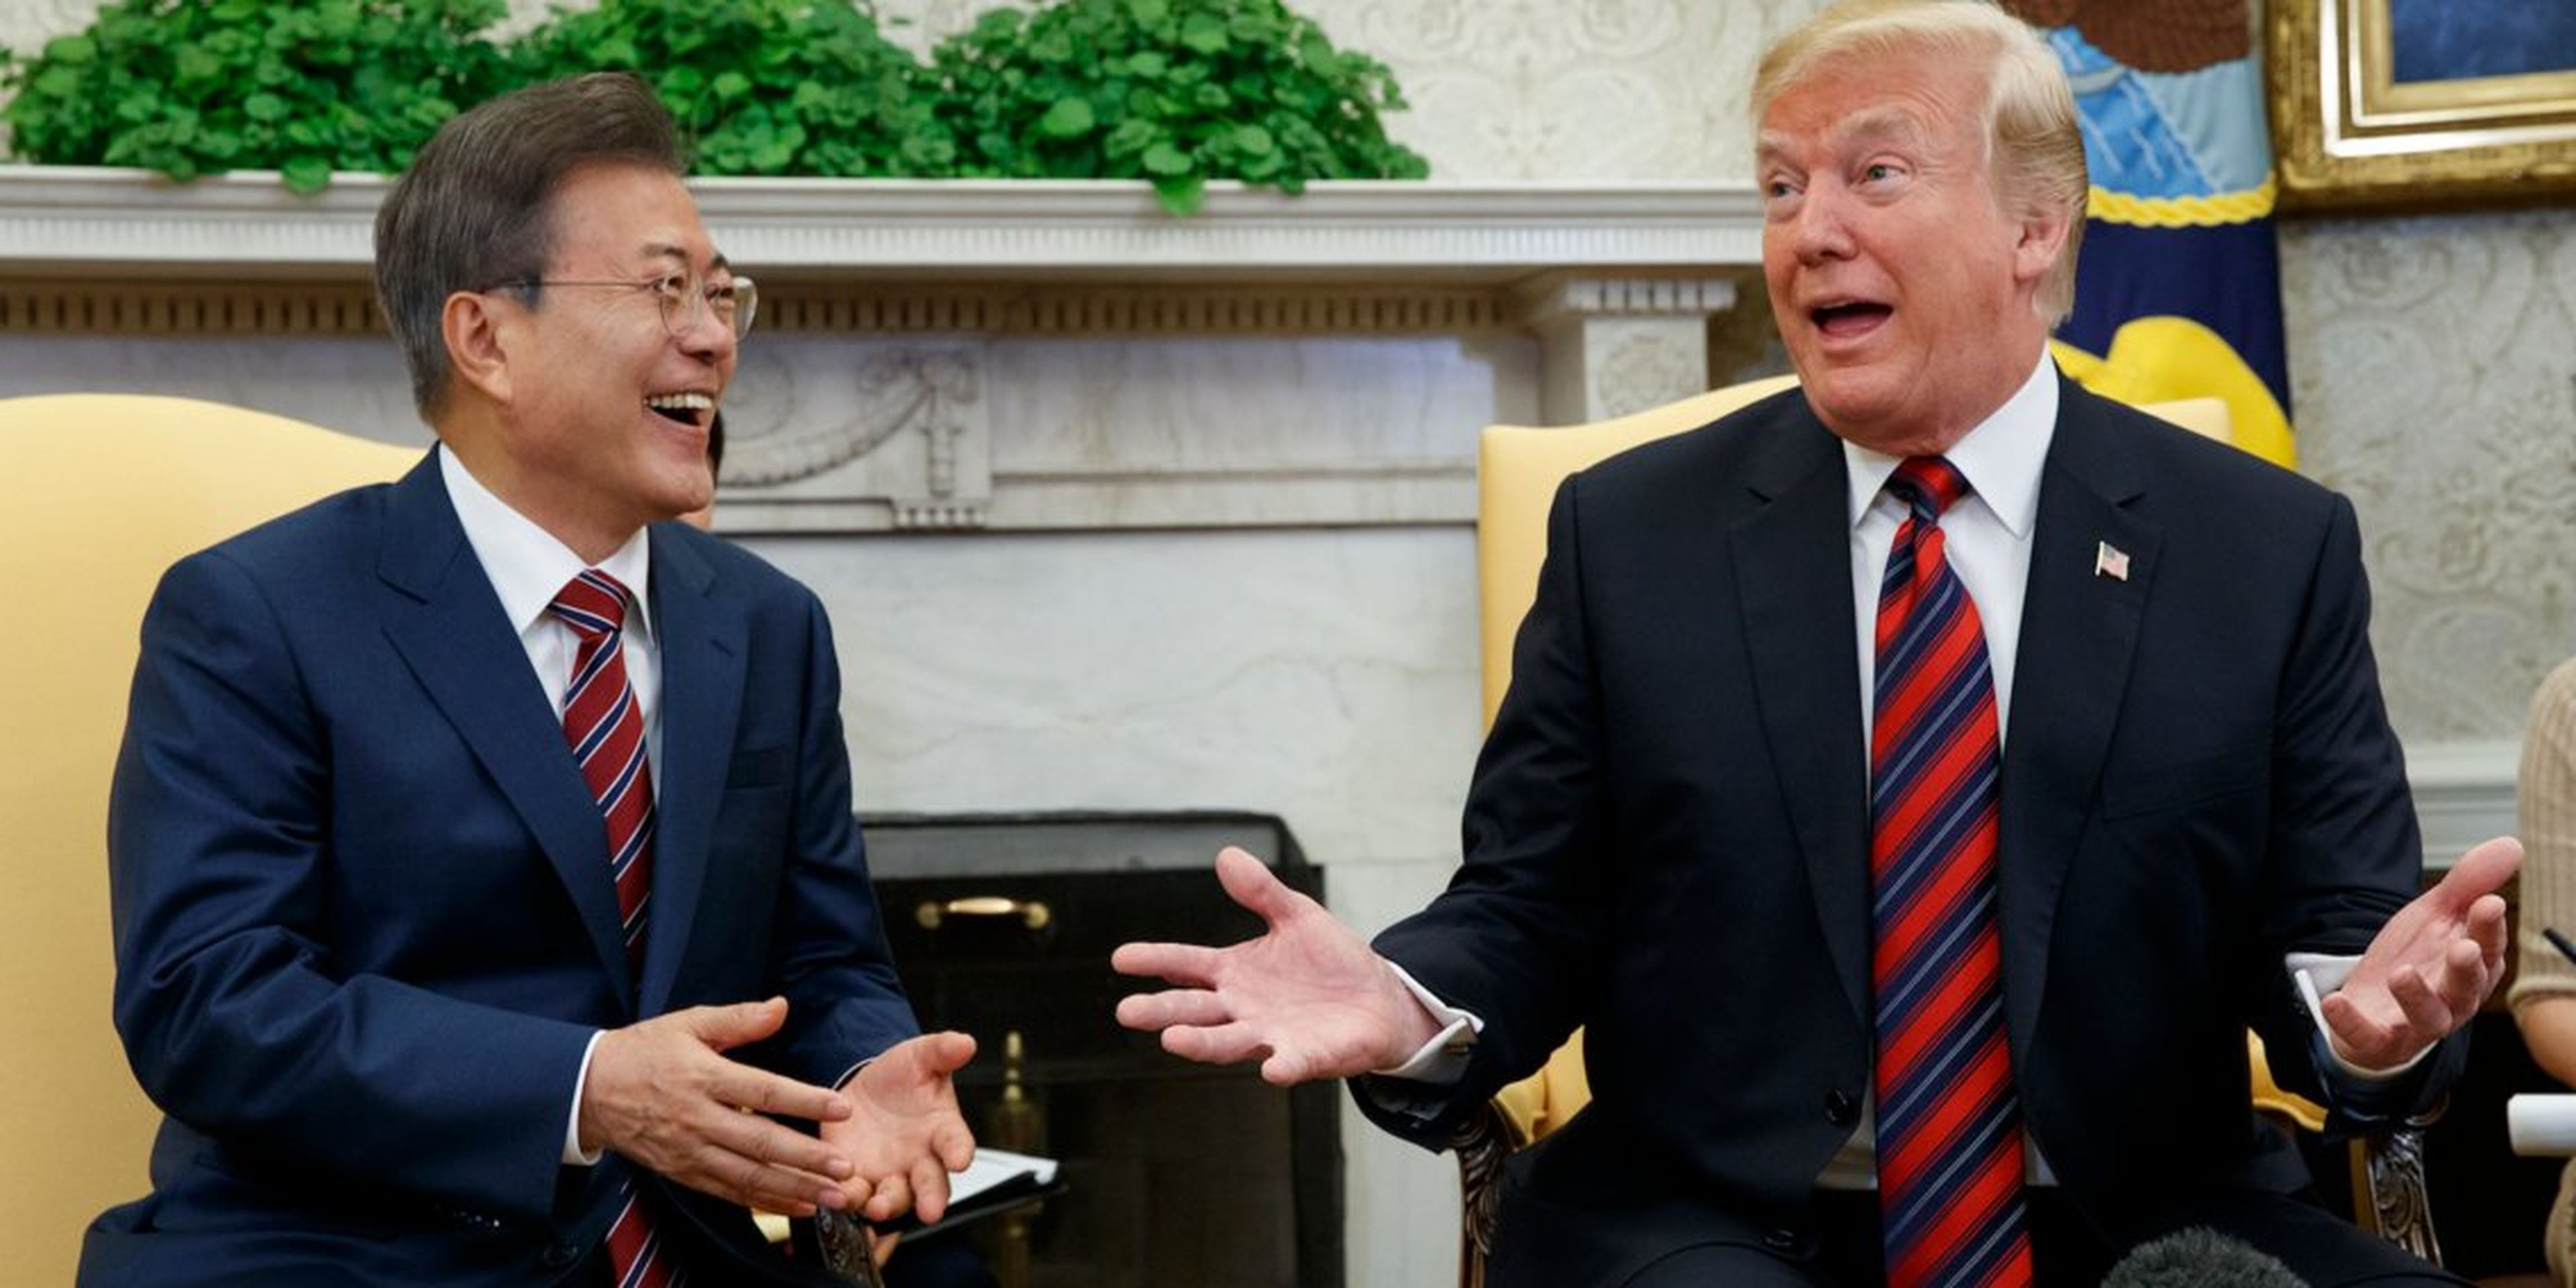 El presidente Donald Trump se reúne con el presidente surcoreano Moon Jae-In en la Casa Blanca, el 22 de mayo de 2018, en Washington.